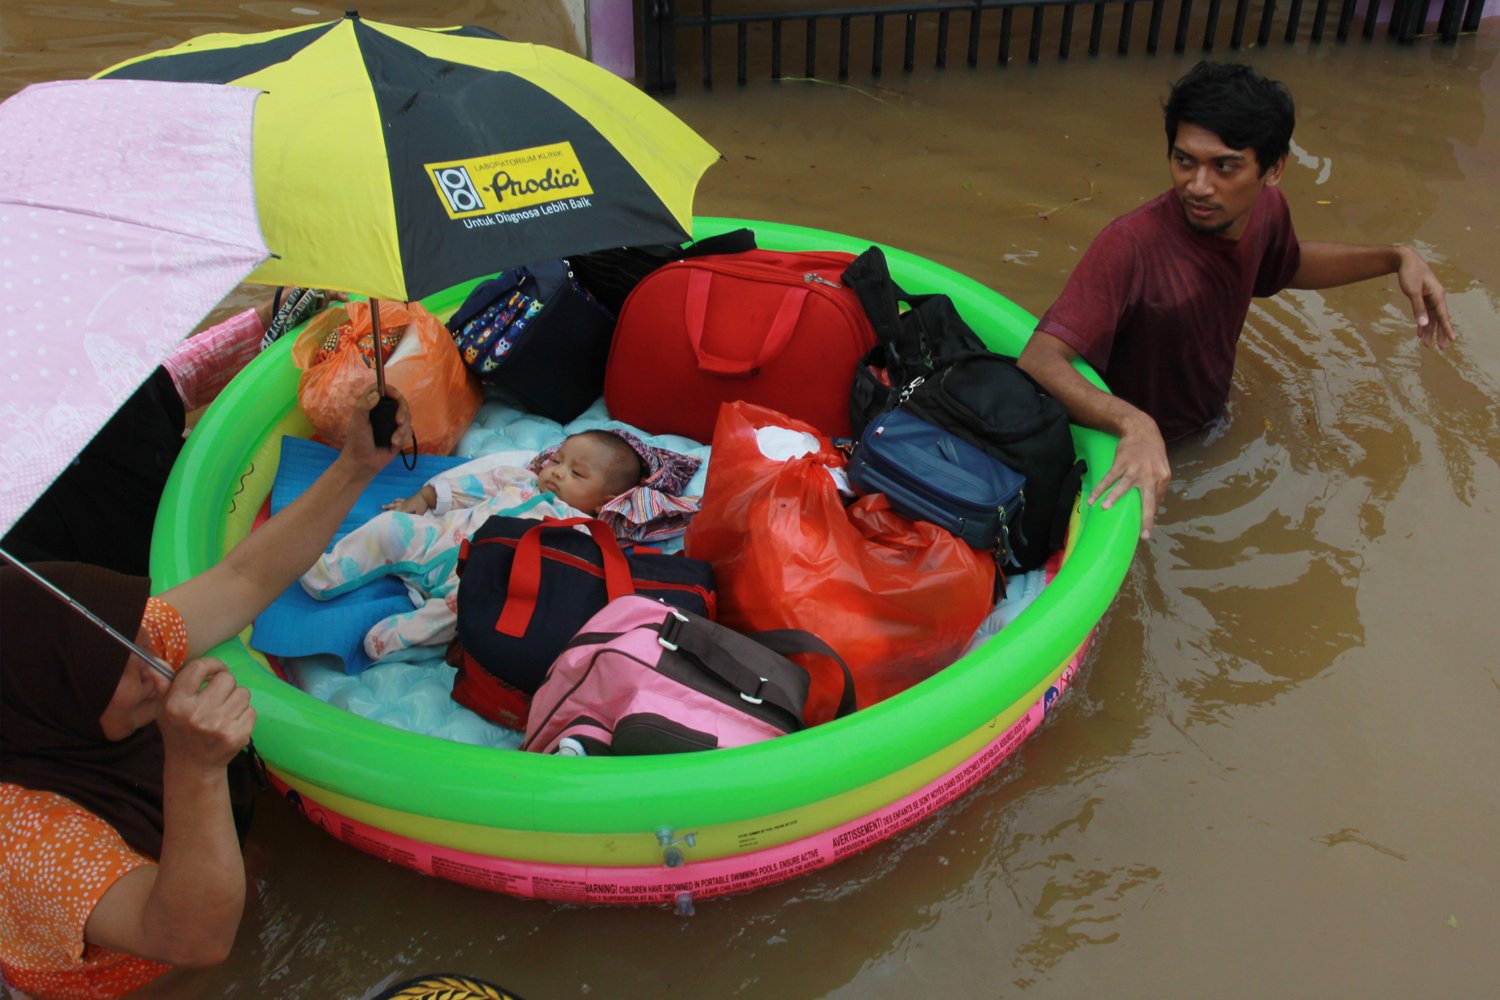 Warga dengan menggunakan perahu karet seadanya menyelamatkan bayinya dari dalam rumahnya yang terendam banjir di Perumaha Puri Bintaro Indah, Ciputat, Tangerang Selatan, Banten, Rabu (1/1/2020). Banjir yang menggenang setinggi 1,5 meter di perumahan tersebut akibat hujan deras seharian yang mengguyur kawasan tersebut serta meluapnya kali di sekitar perumahan itu. 